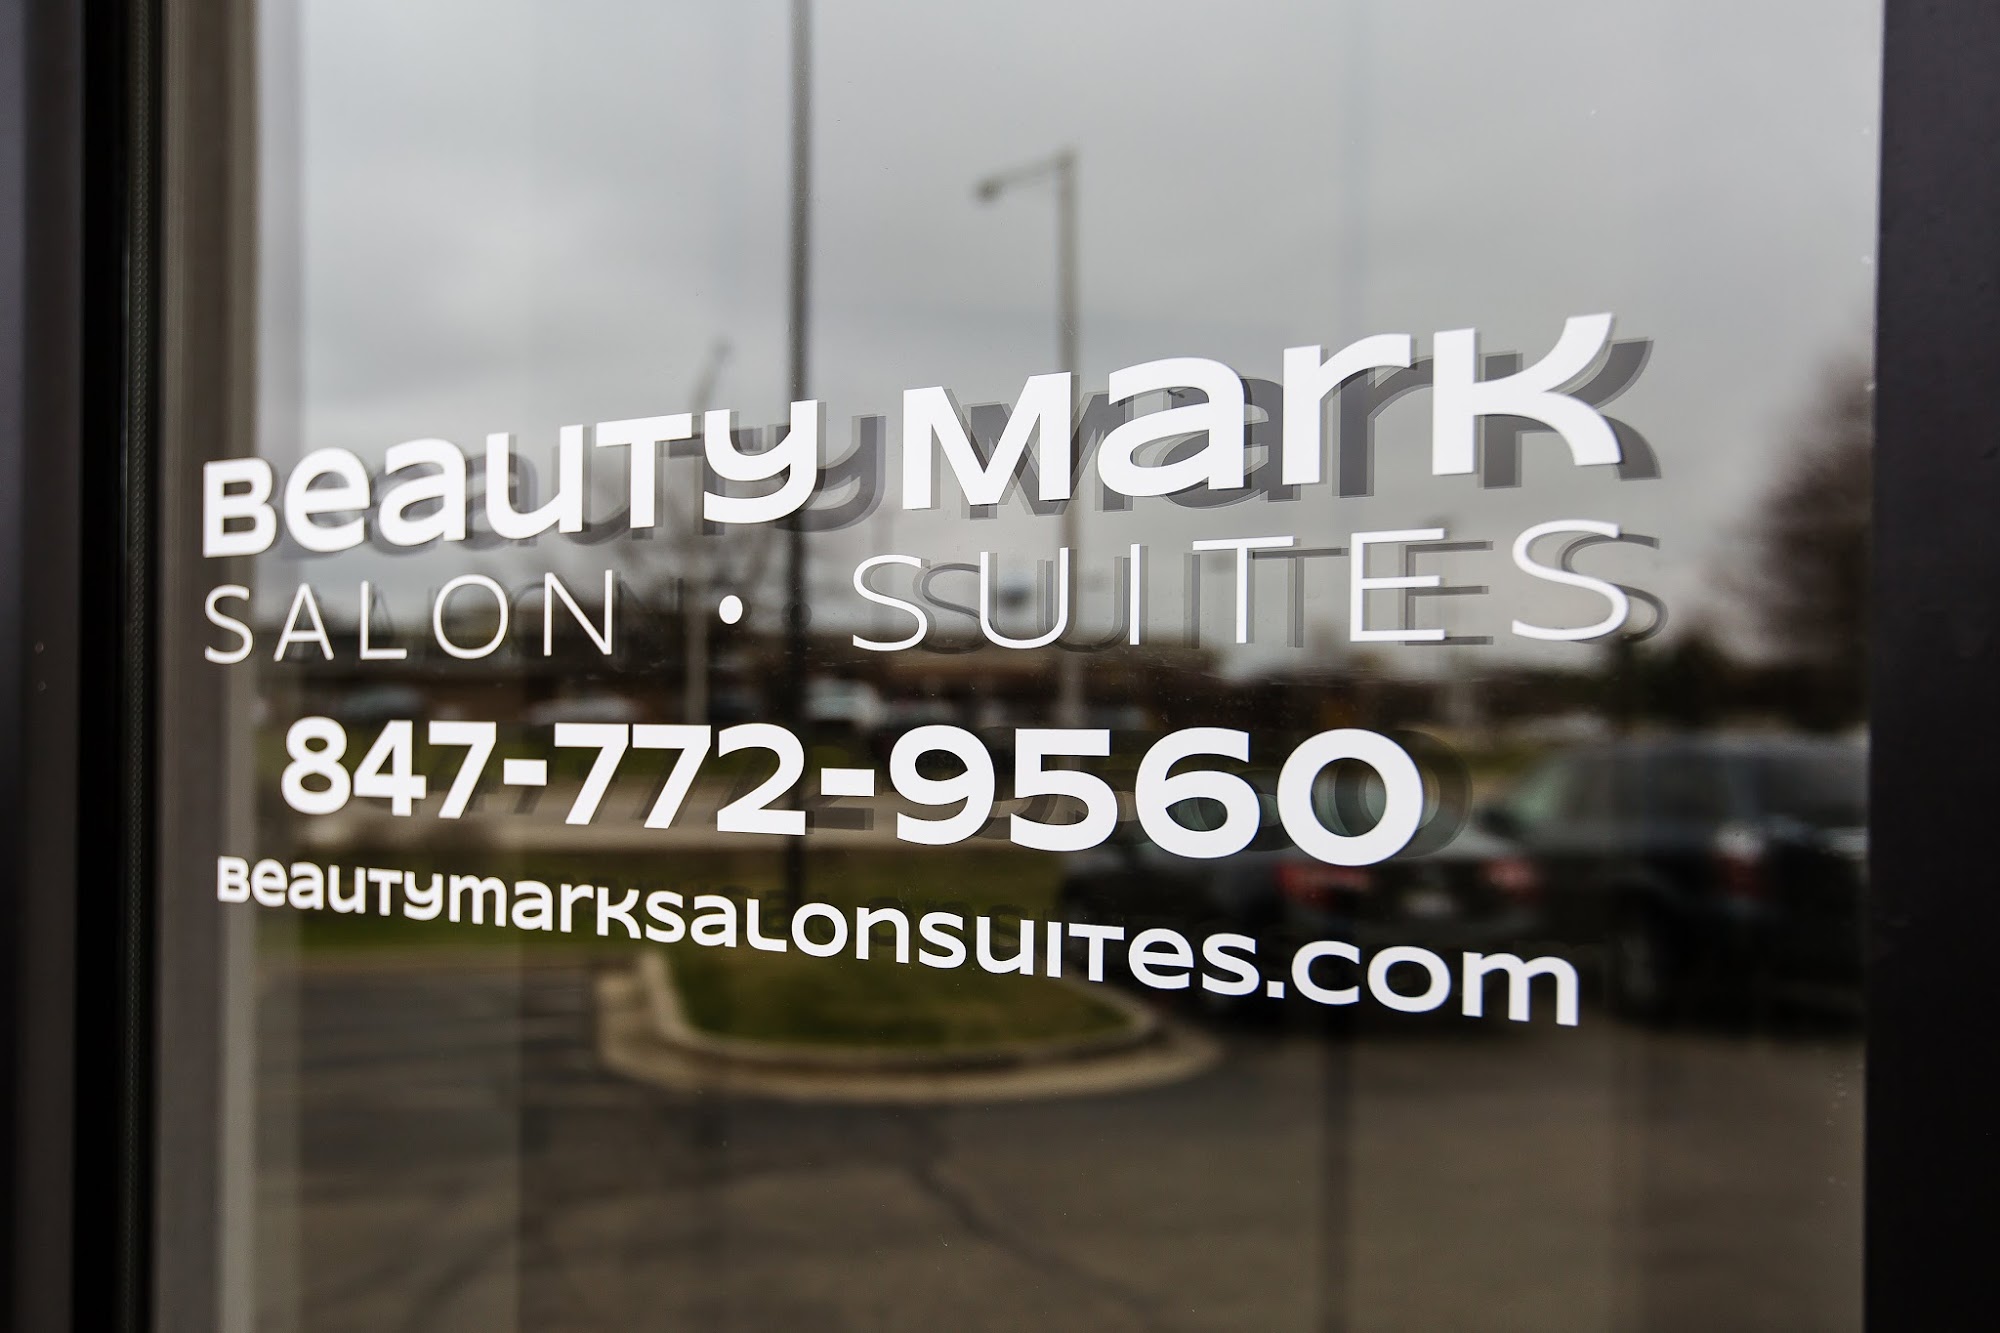 Beauty Mark Salon • Suites